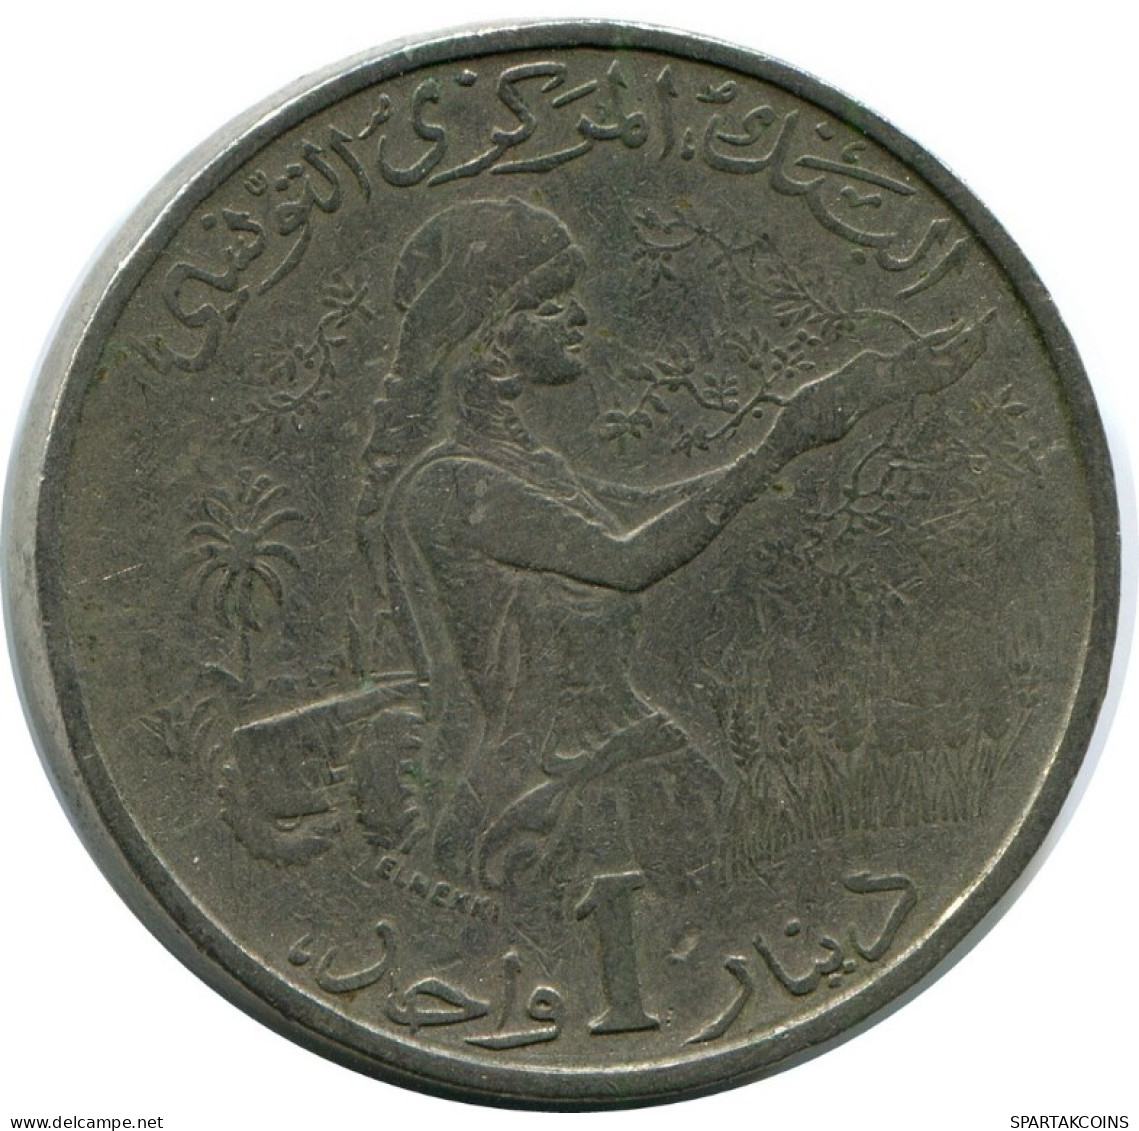 1 DINAR 1976 TUNISIA Coin #AH930.U.A - Túnez